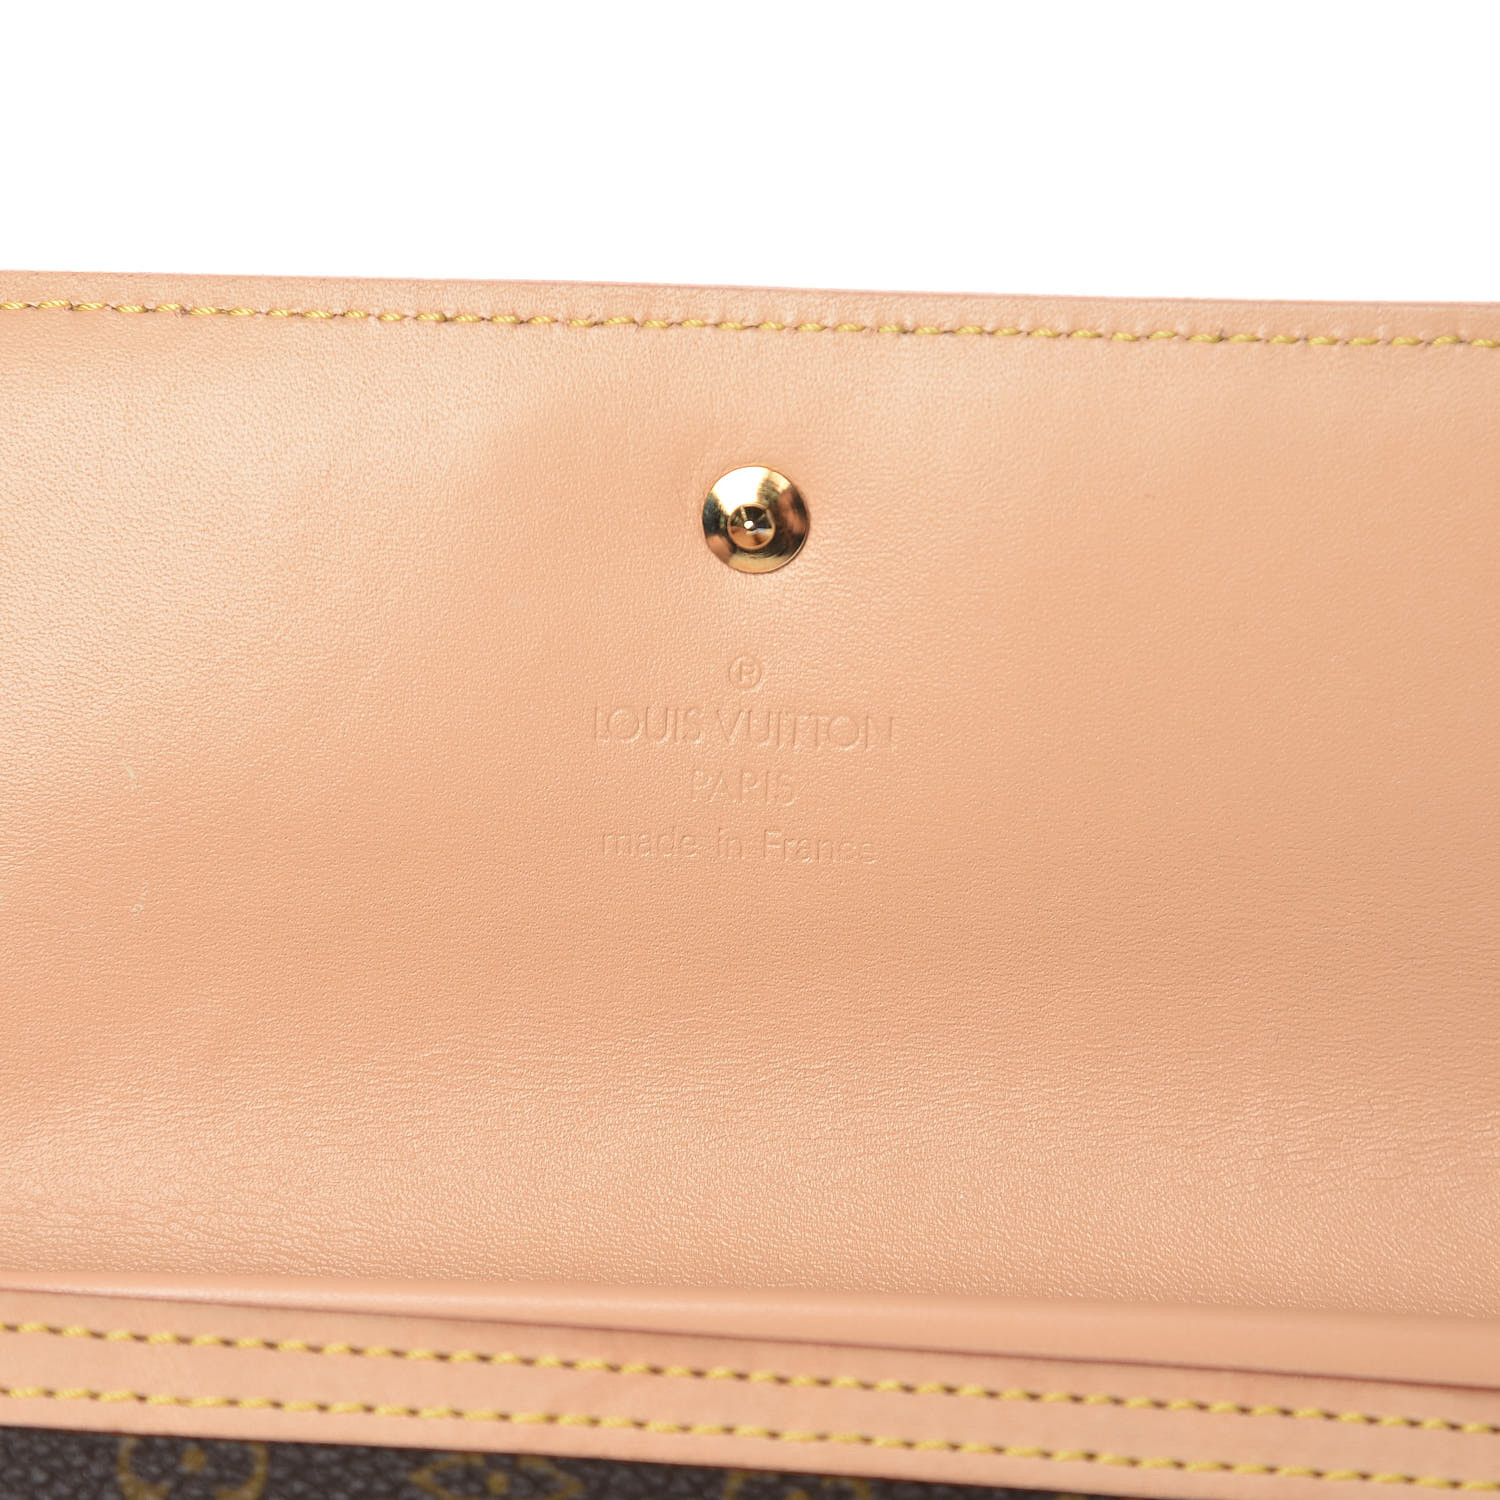 Louis Vuitton Cherry Blossom International Wallet